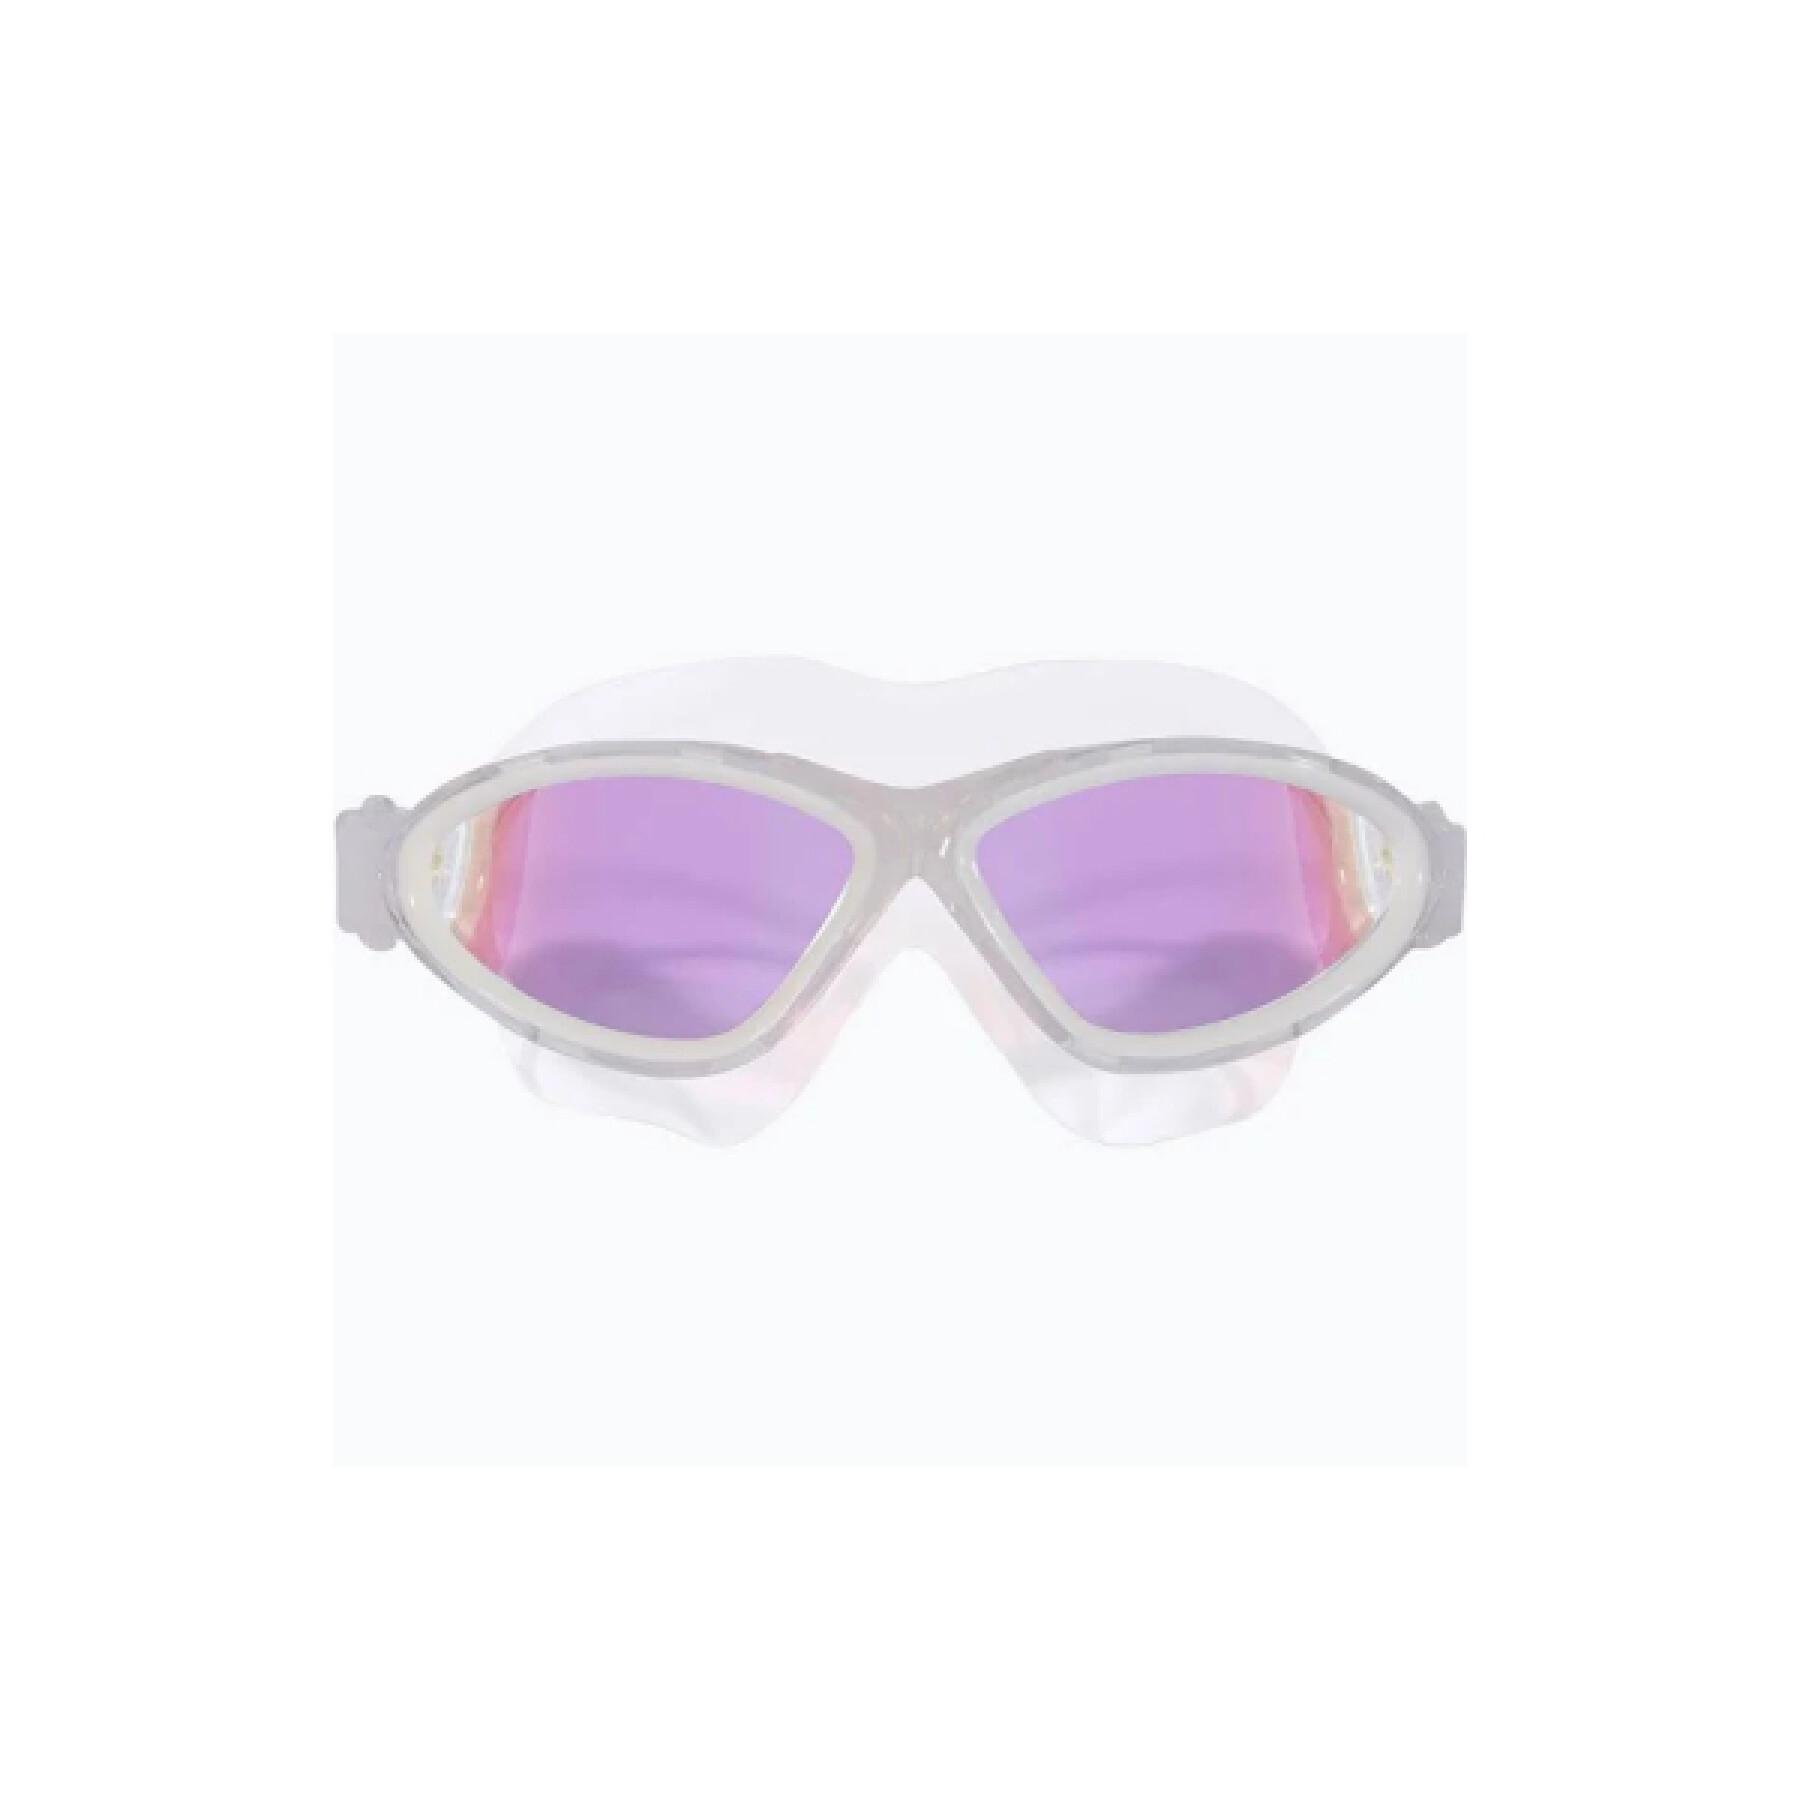 Gafas de natación Huub Manta Ray